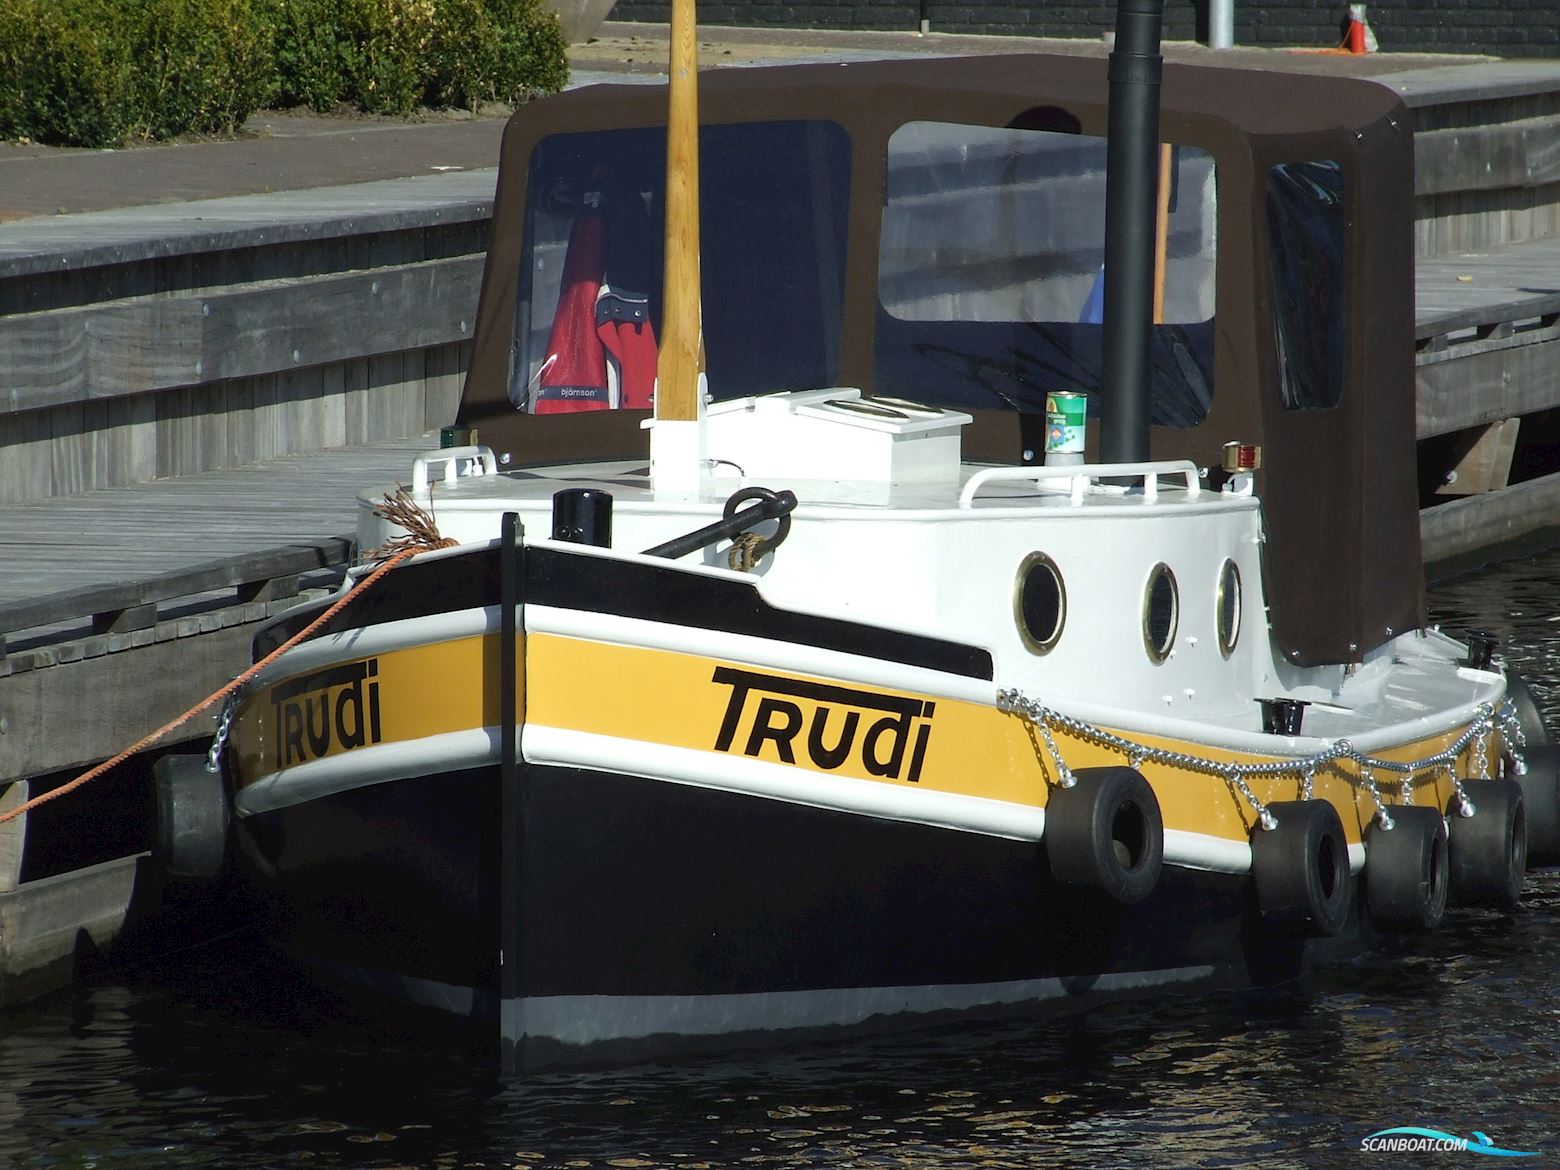 Opduwer 6.00 Motor boat 2010, with Lambardini engine, The Netherlands